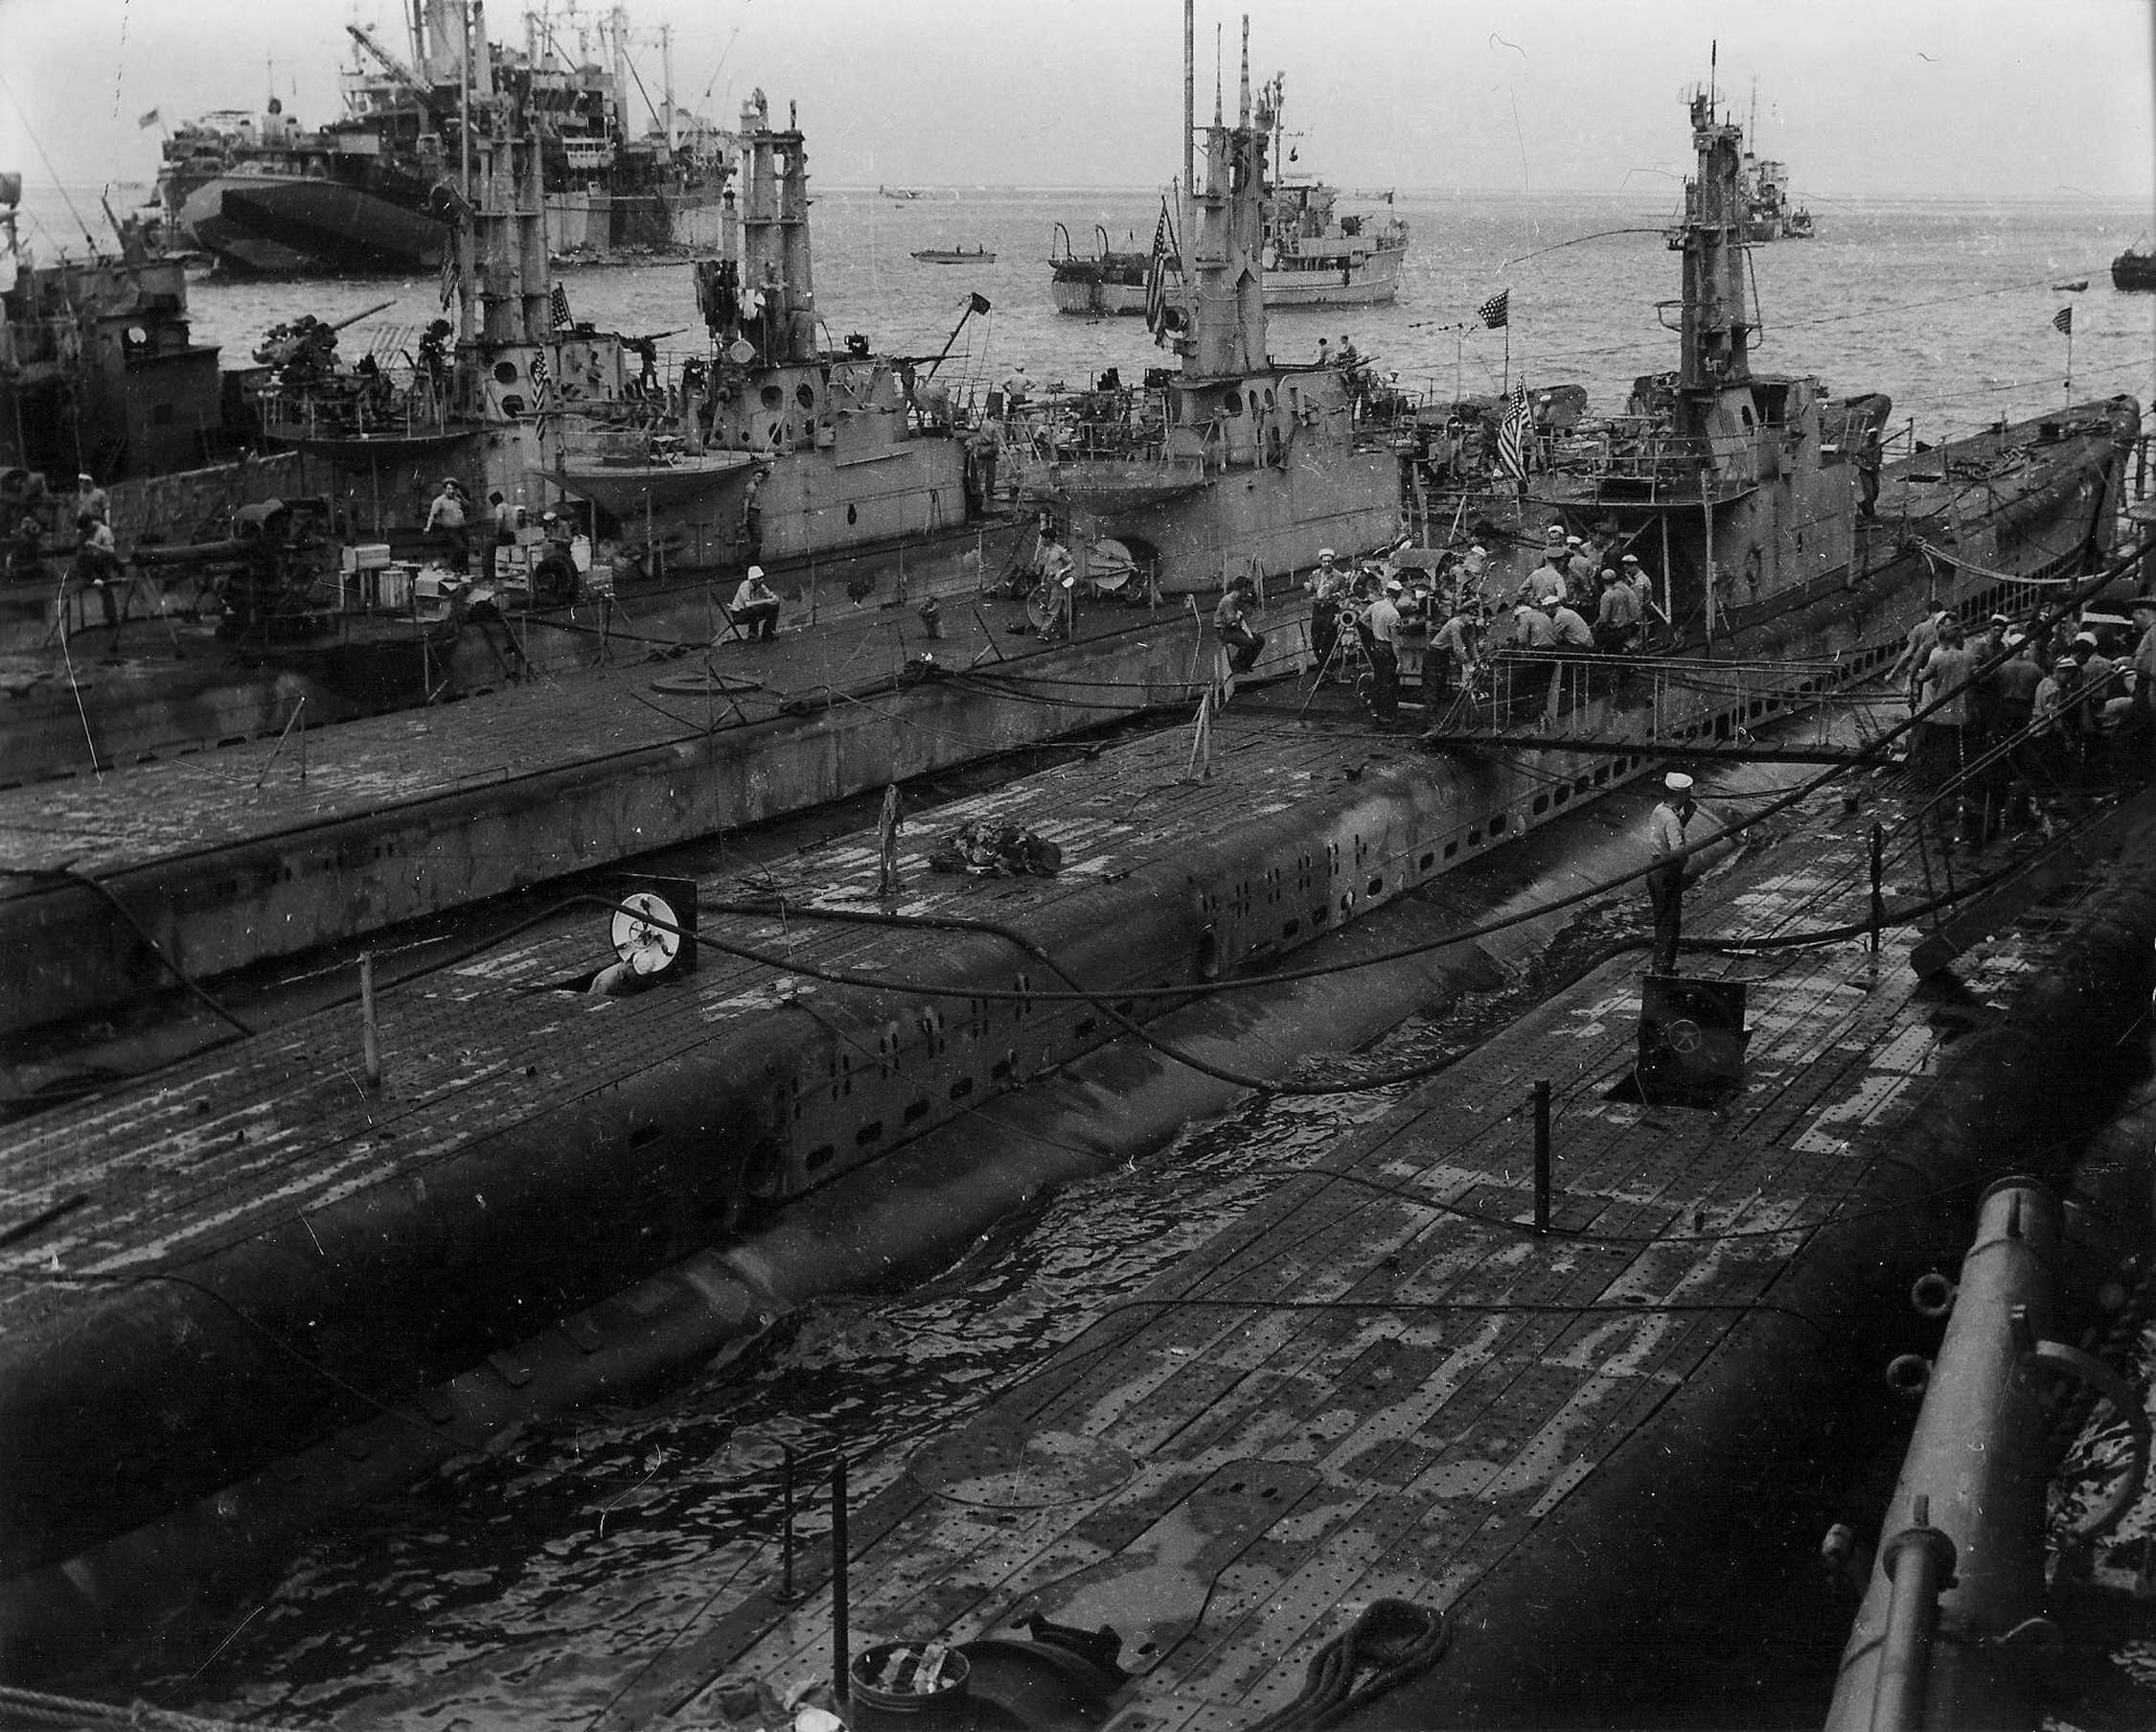 USS Spot, USS Sea Fox, and USS Queenfish at Saipan, Mariana Islands, Mar 1945